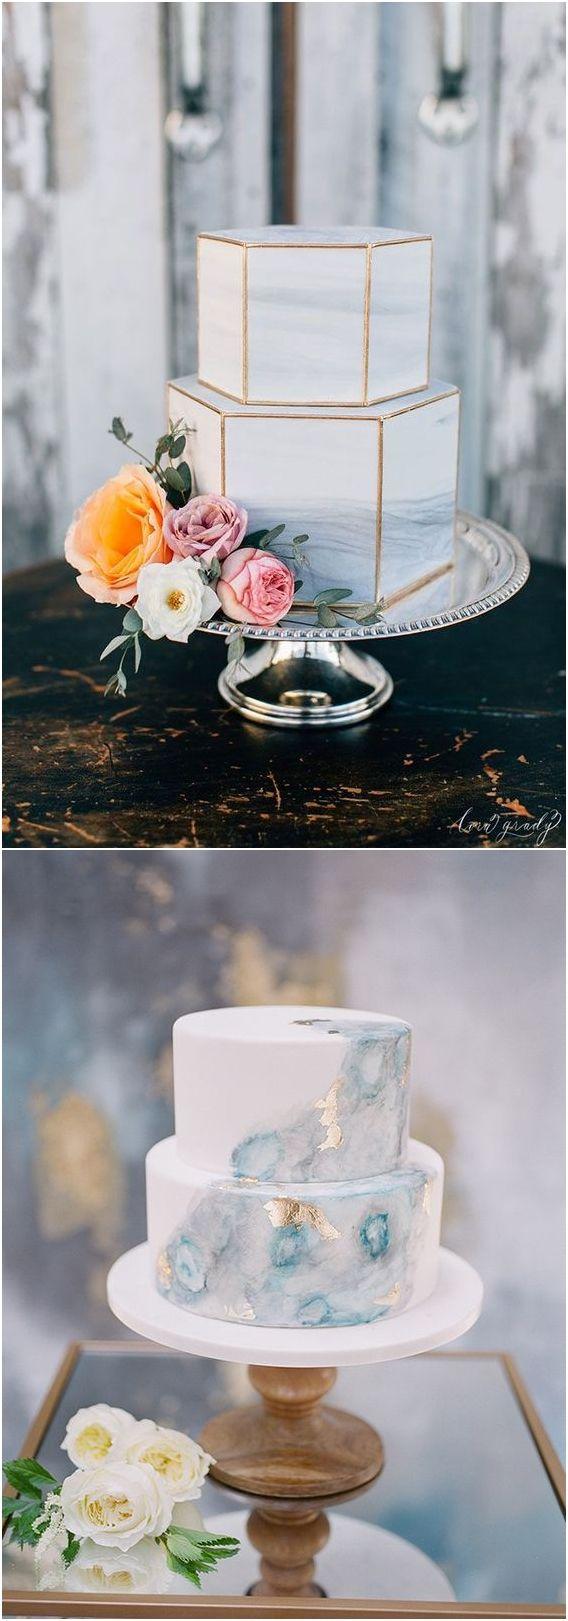 Wedding - Top 5 Wedding Cake Trends In 2018